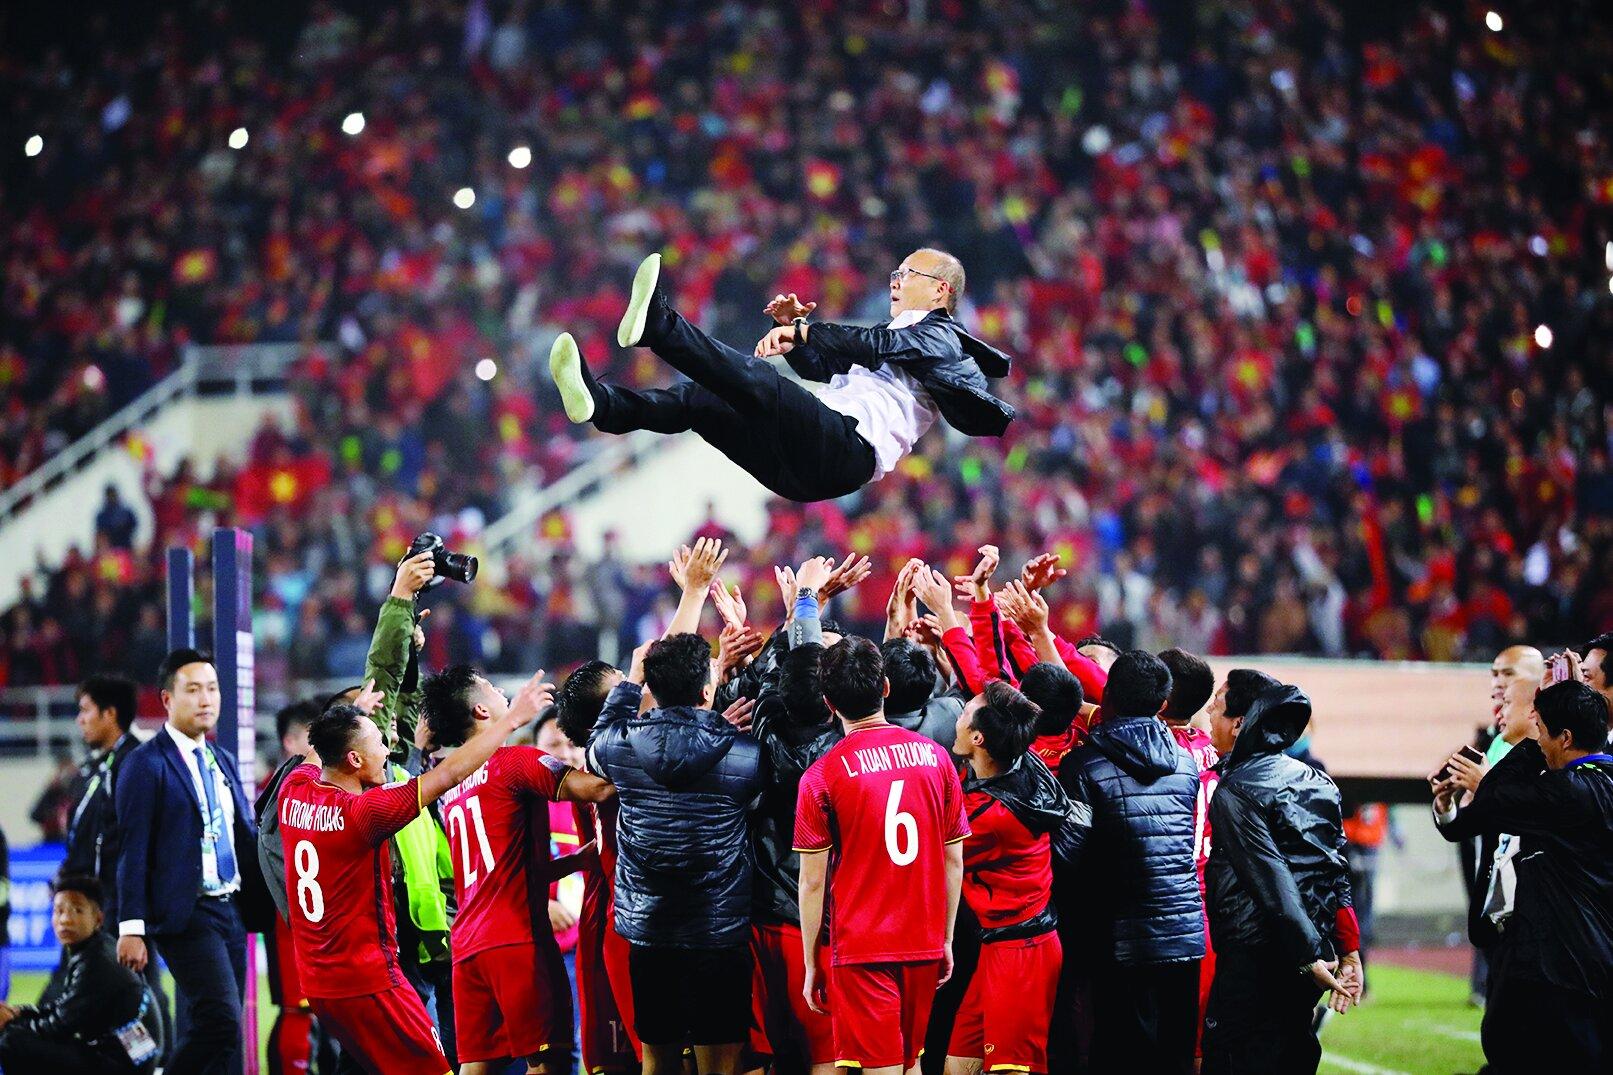 Đây sẽ là vinh quang cuối cùng mà các cầu thủ Việt Nam nguyện chiến đấu hết mình để mang về cho thầy Park (Ảnh: Internet)